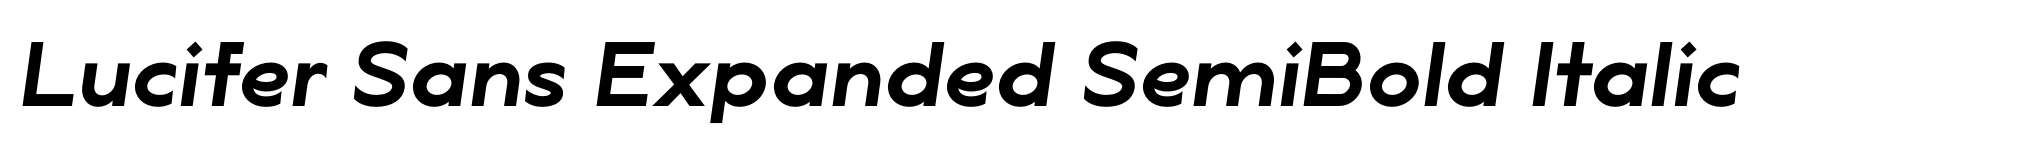 Lucifer Sans Expanded SemiBold Italic image